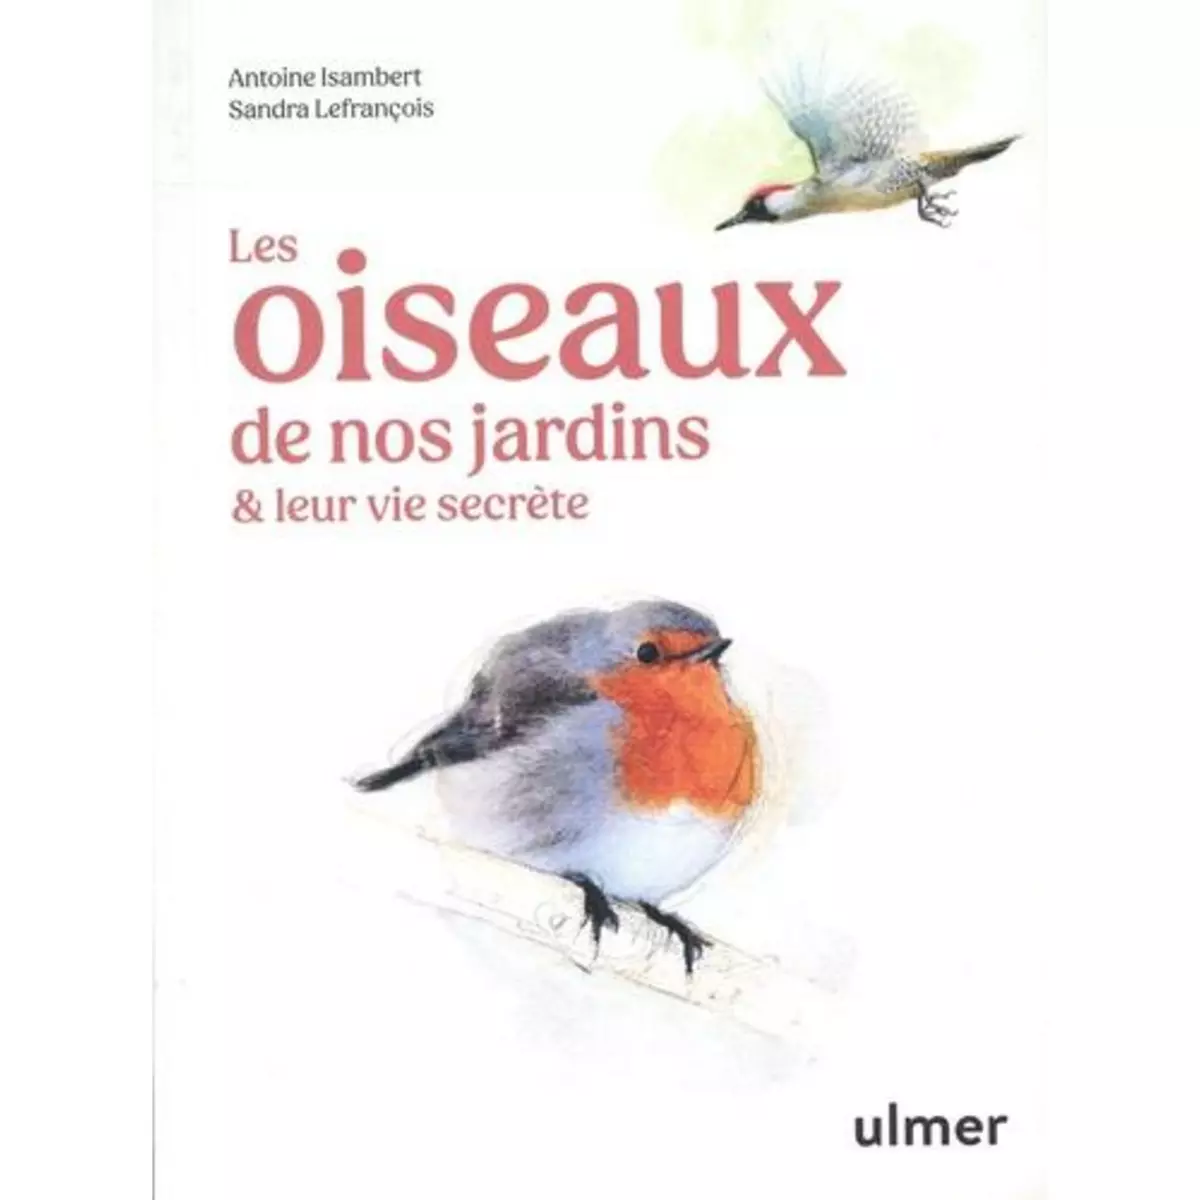  LES OISEAUX DE NOS JARDINS & LEUR VIE SECRETE, Isambert Antoine